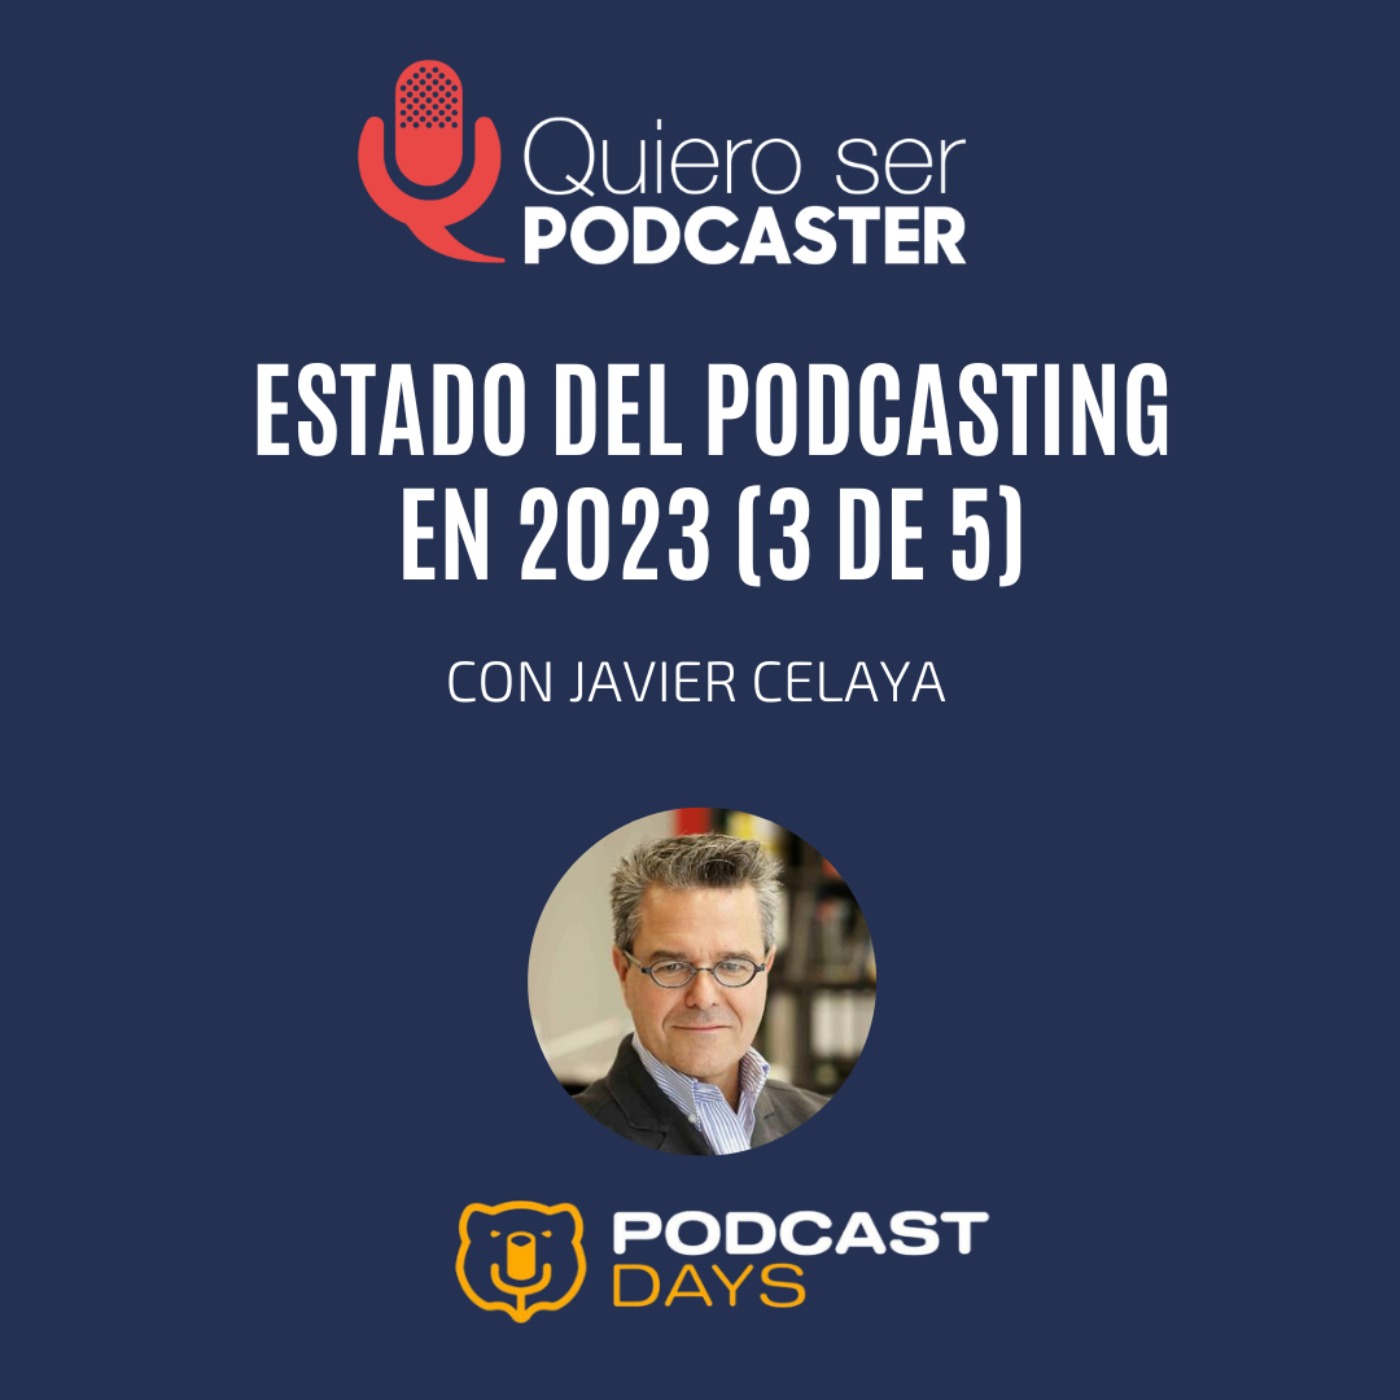 Javier Celaya y el estado del podcasting 2023, con @javiercelaya , grabado en @PodcastDays_